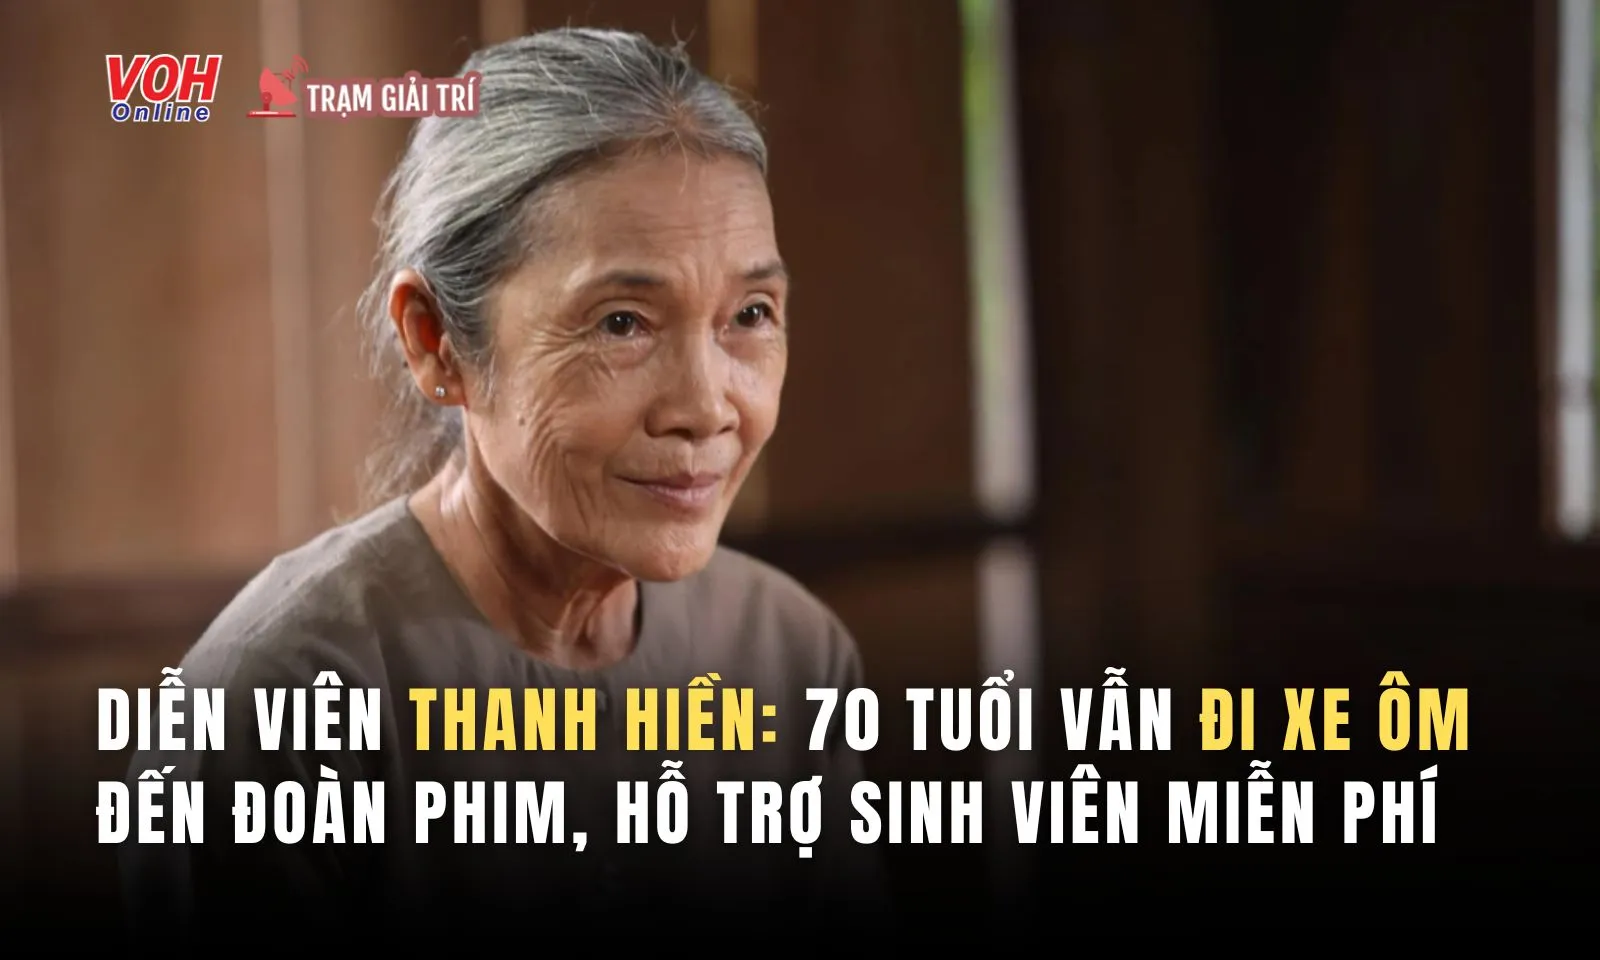 Diễn viên Thanh Hiền: 70 tuổi vẫn đi xe ôm đến đoàn phim, hỗ trợ sinh viên không cần cát-xê